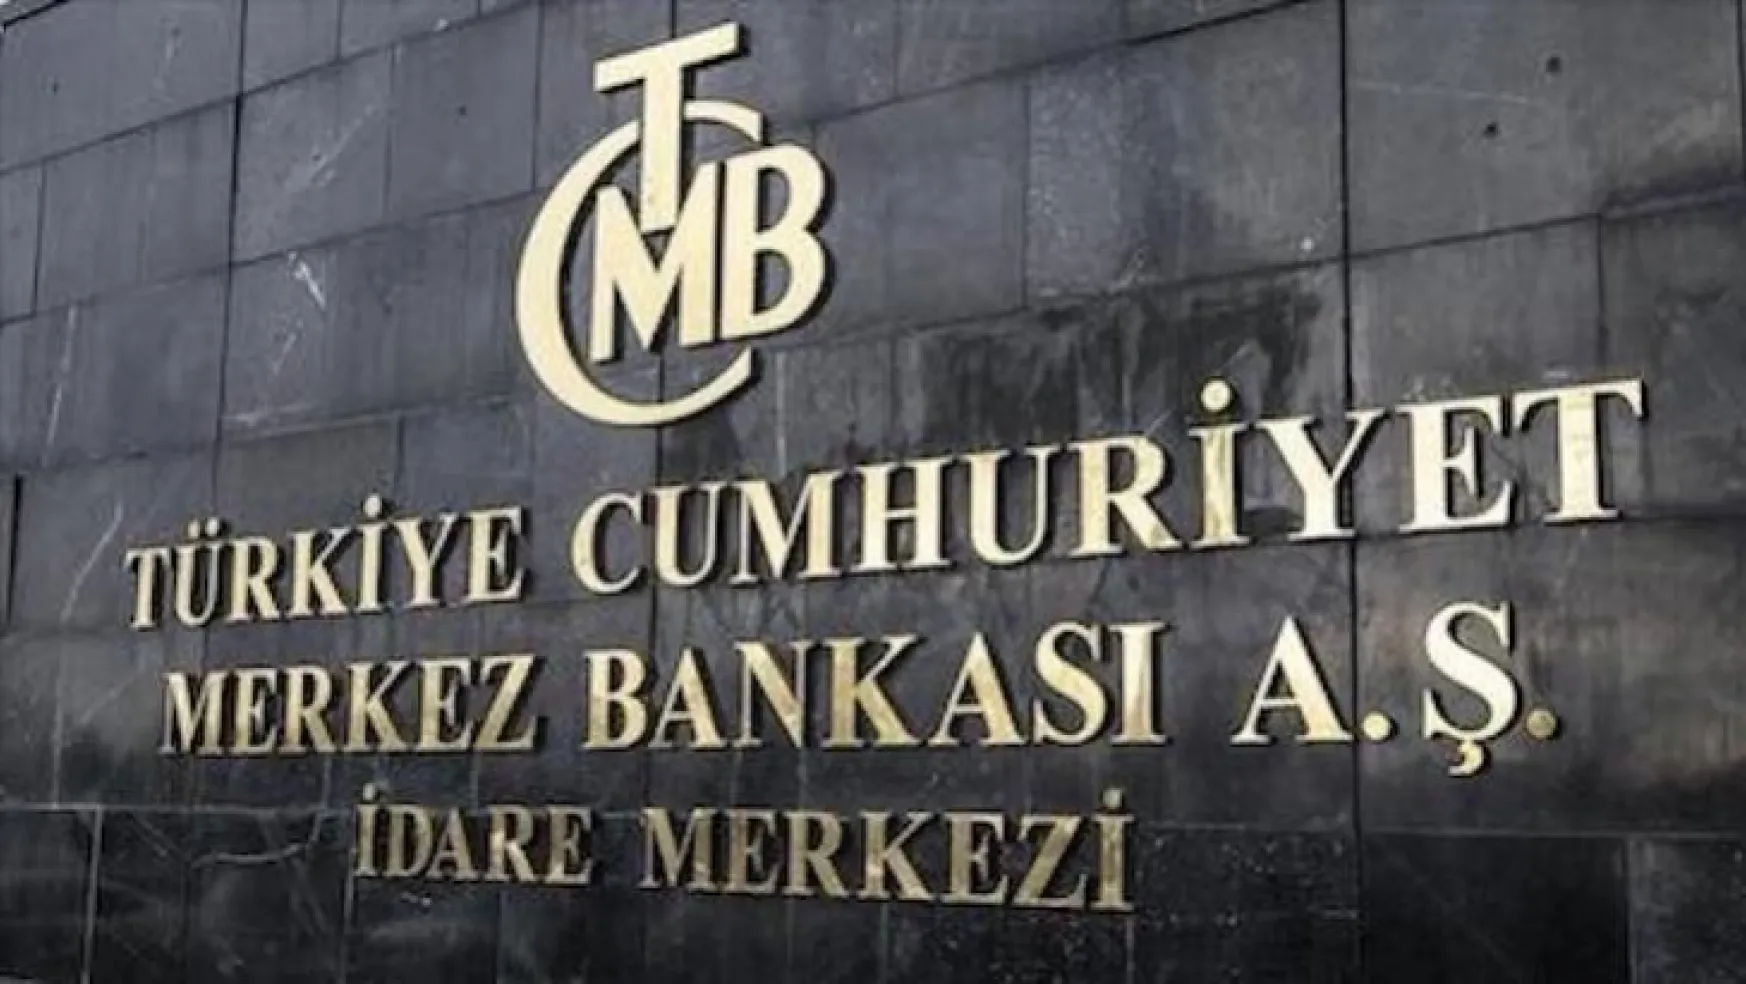 'Sayın Erdoğan Merkez Bankası'nın başına kendini atasın'